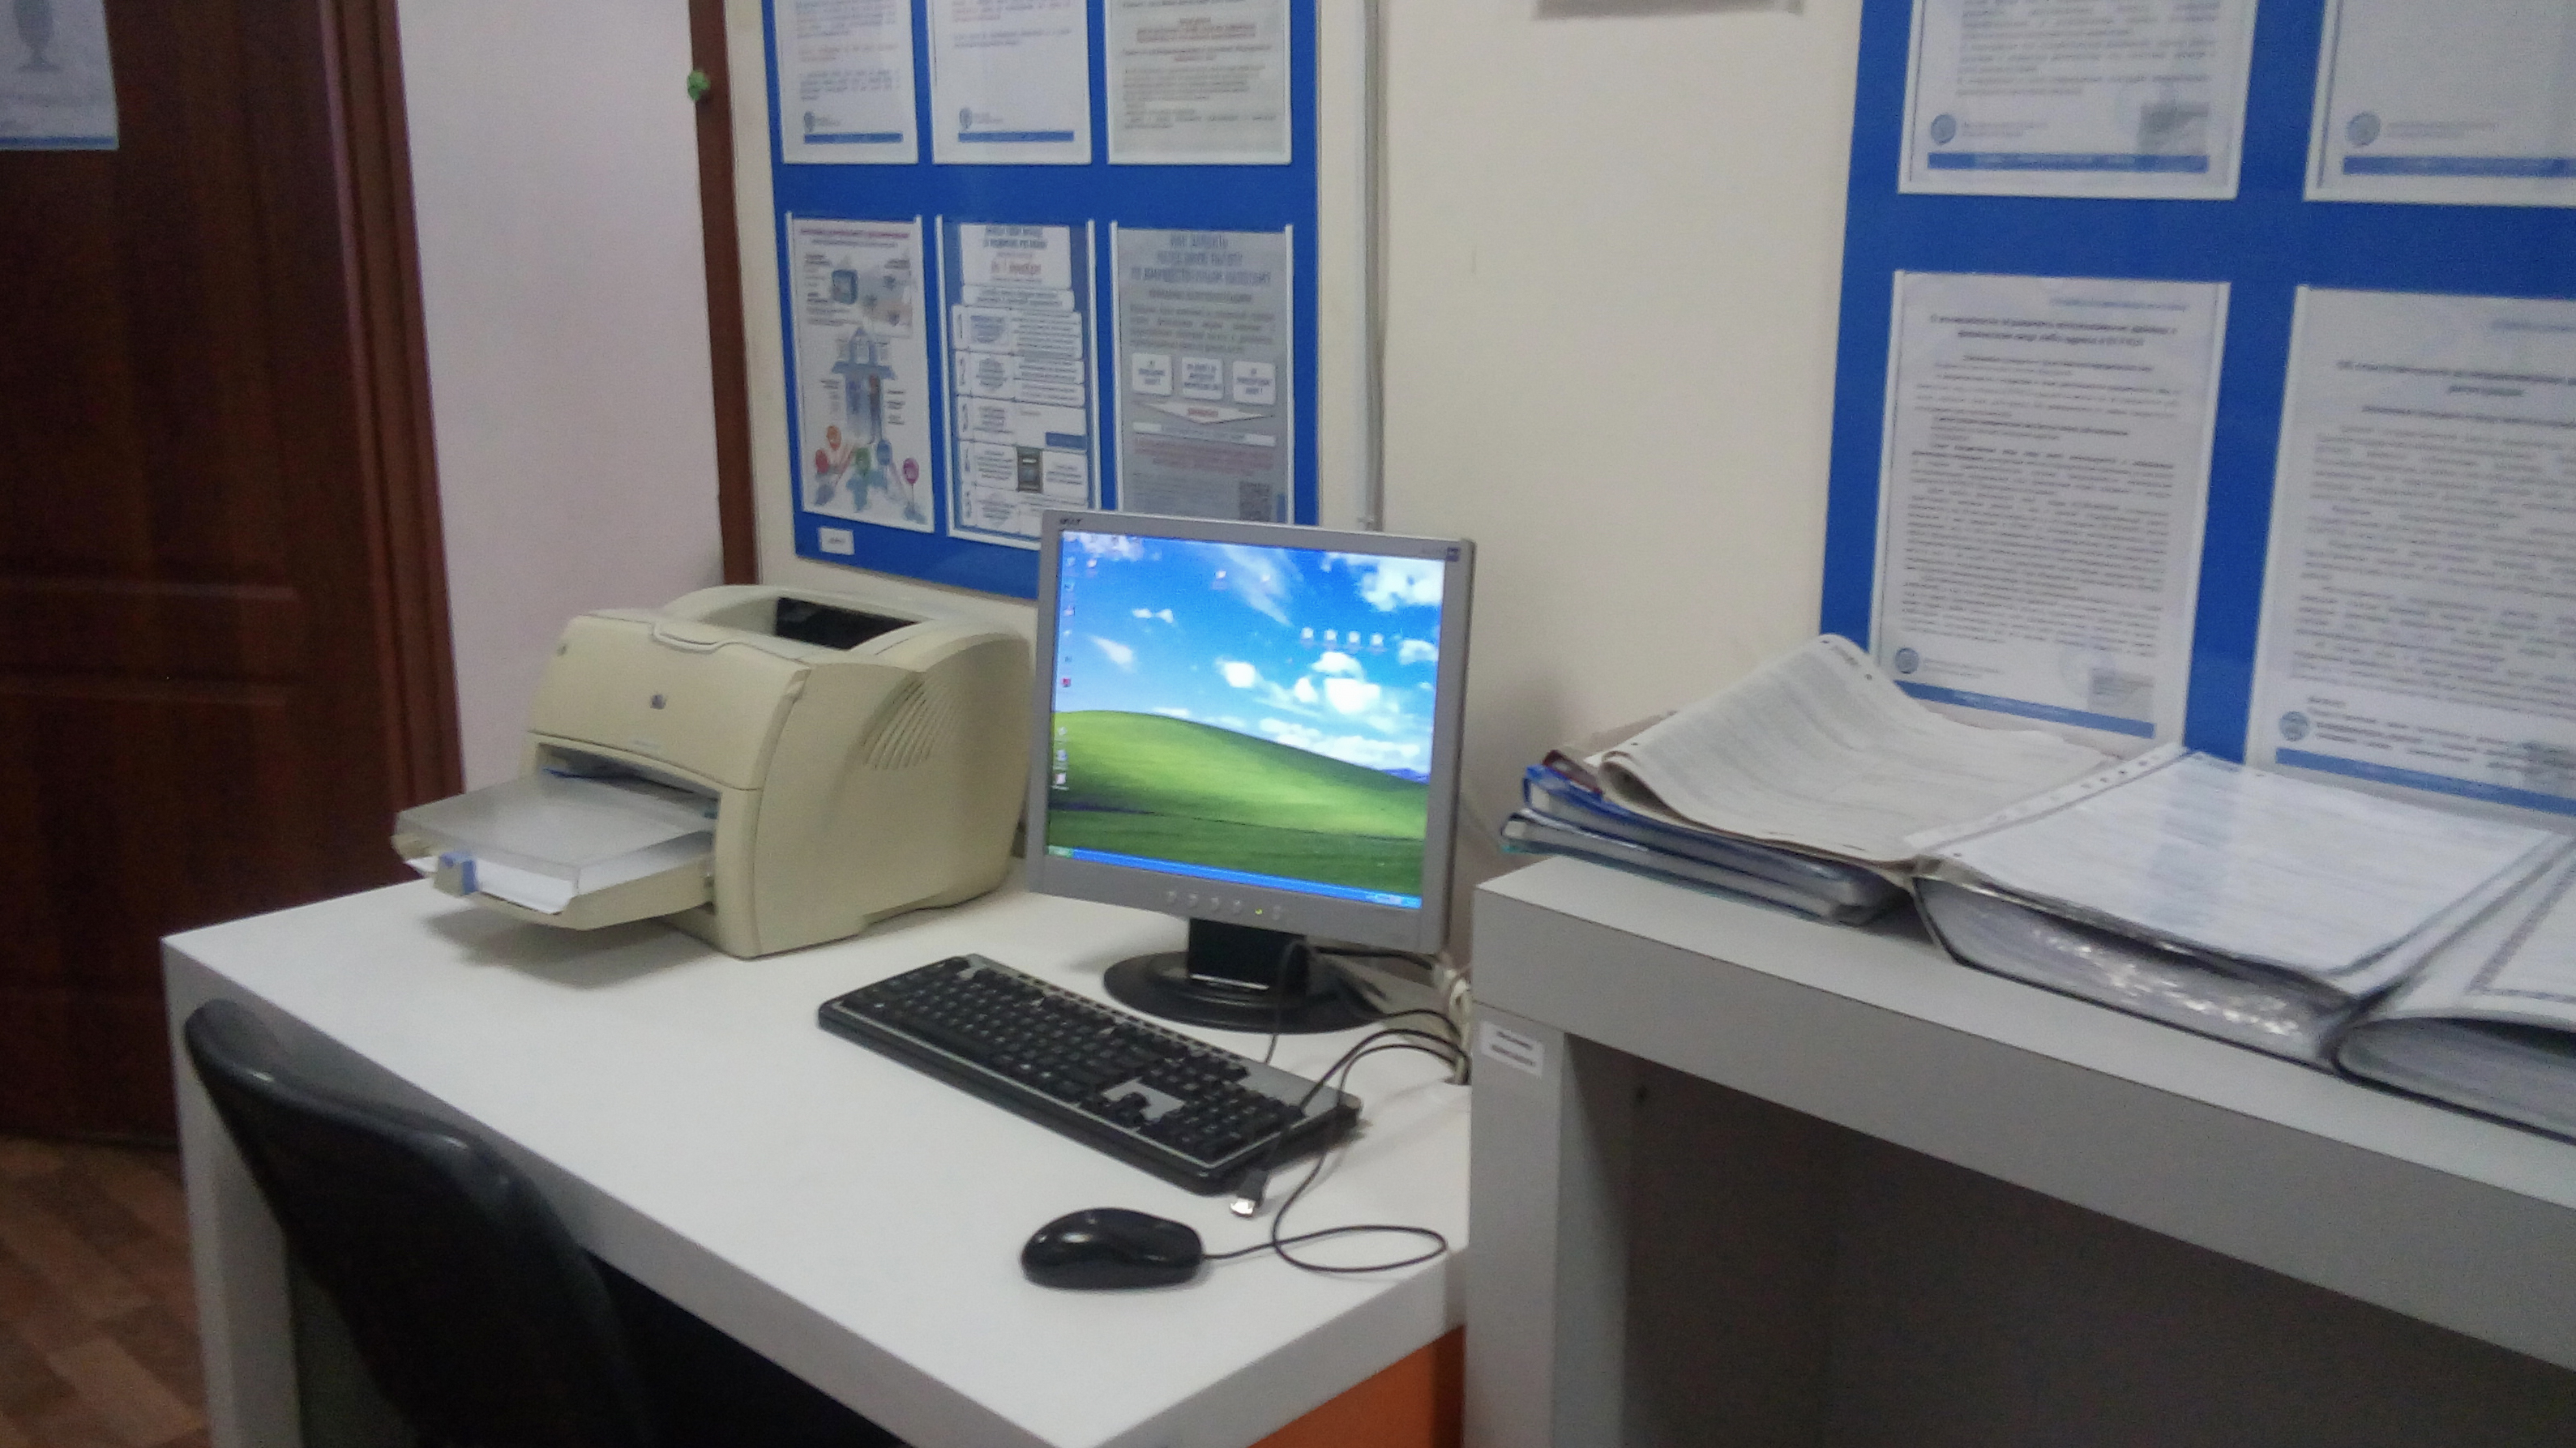   На гостевом компьютере в операционном зале Вы можете воспользоваться сервисами официального сайта ФНС России и распечатать документы